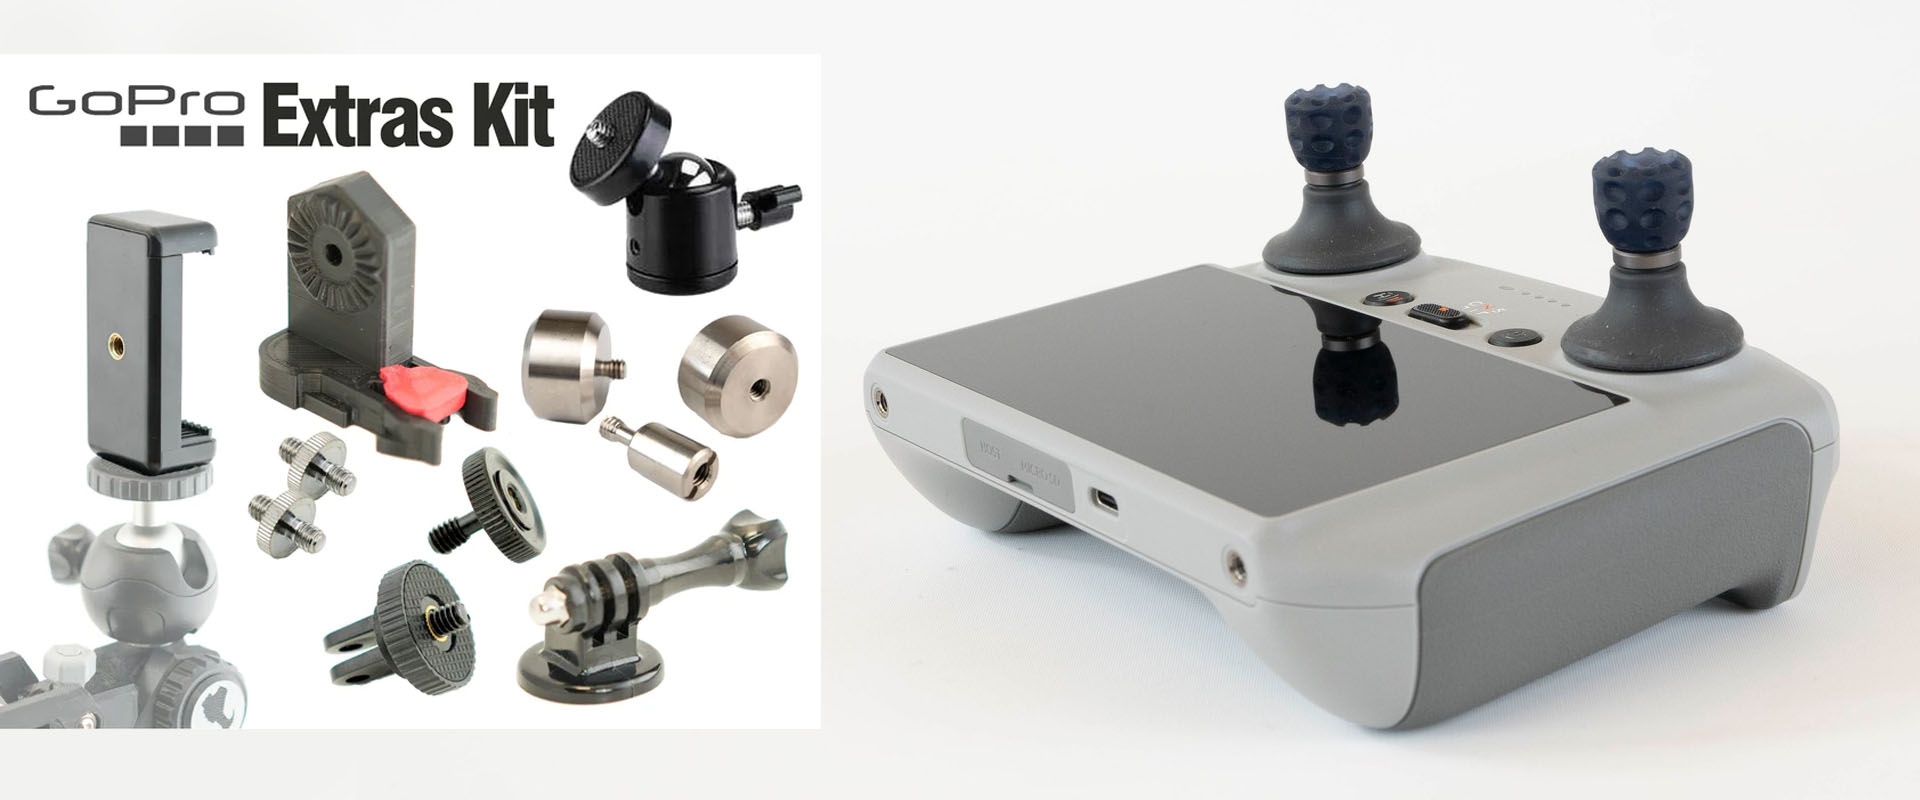 Herramientas para GoPro y DJI Mini 3 Pro